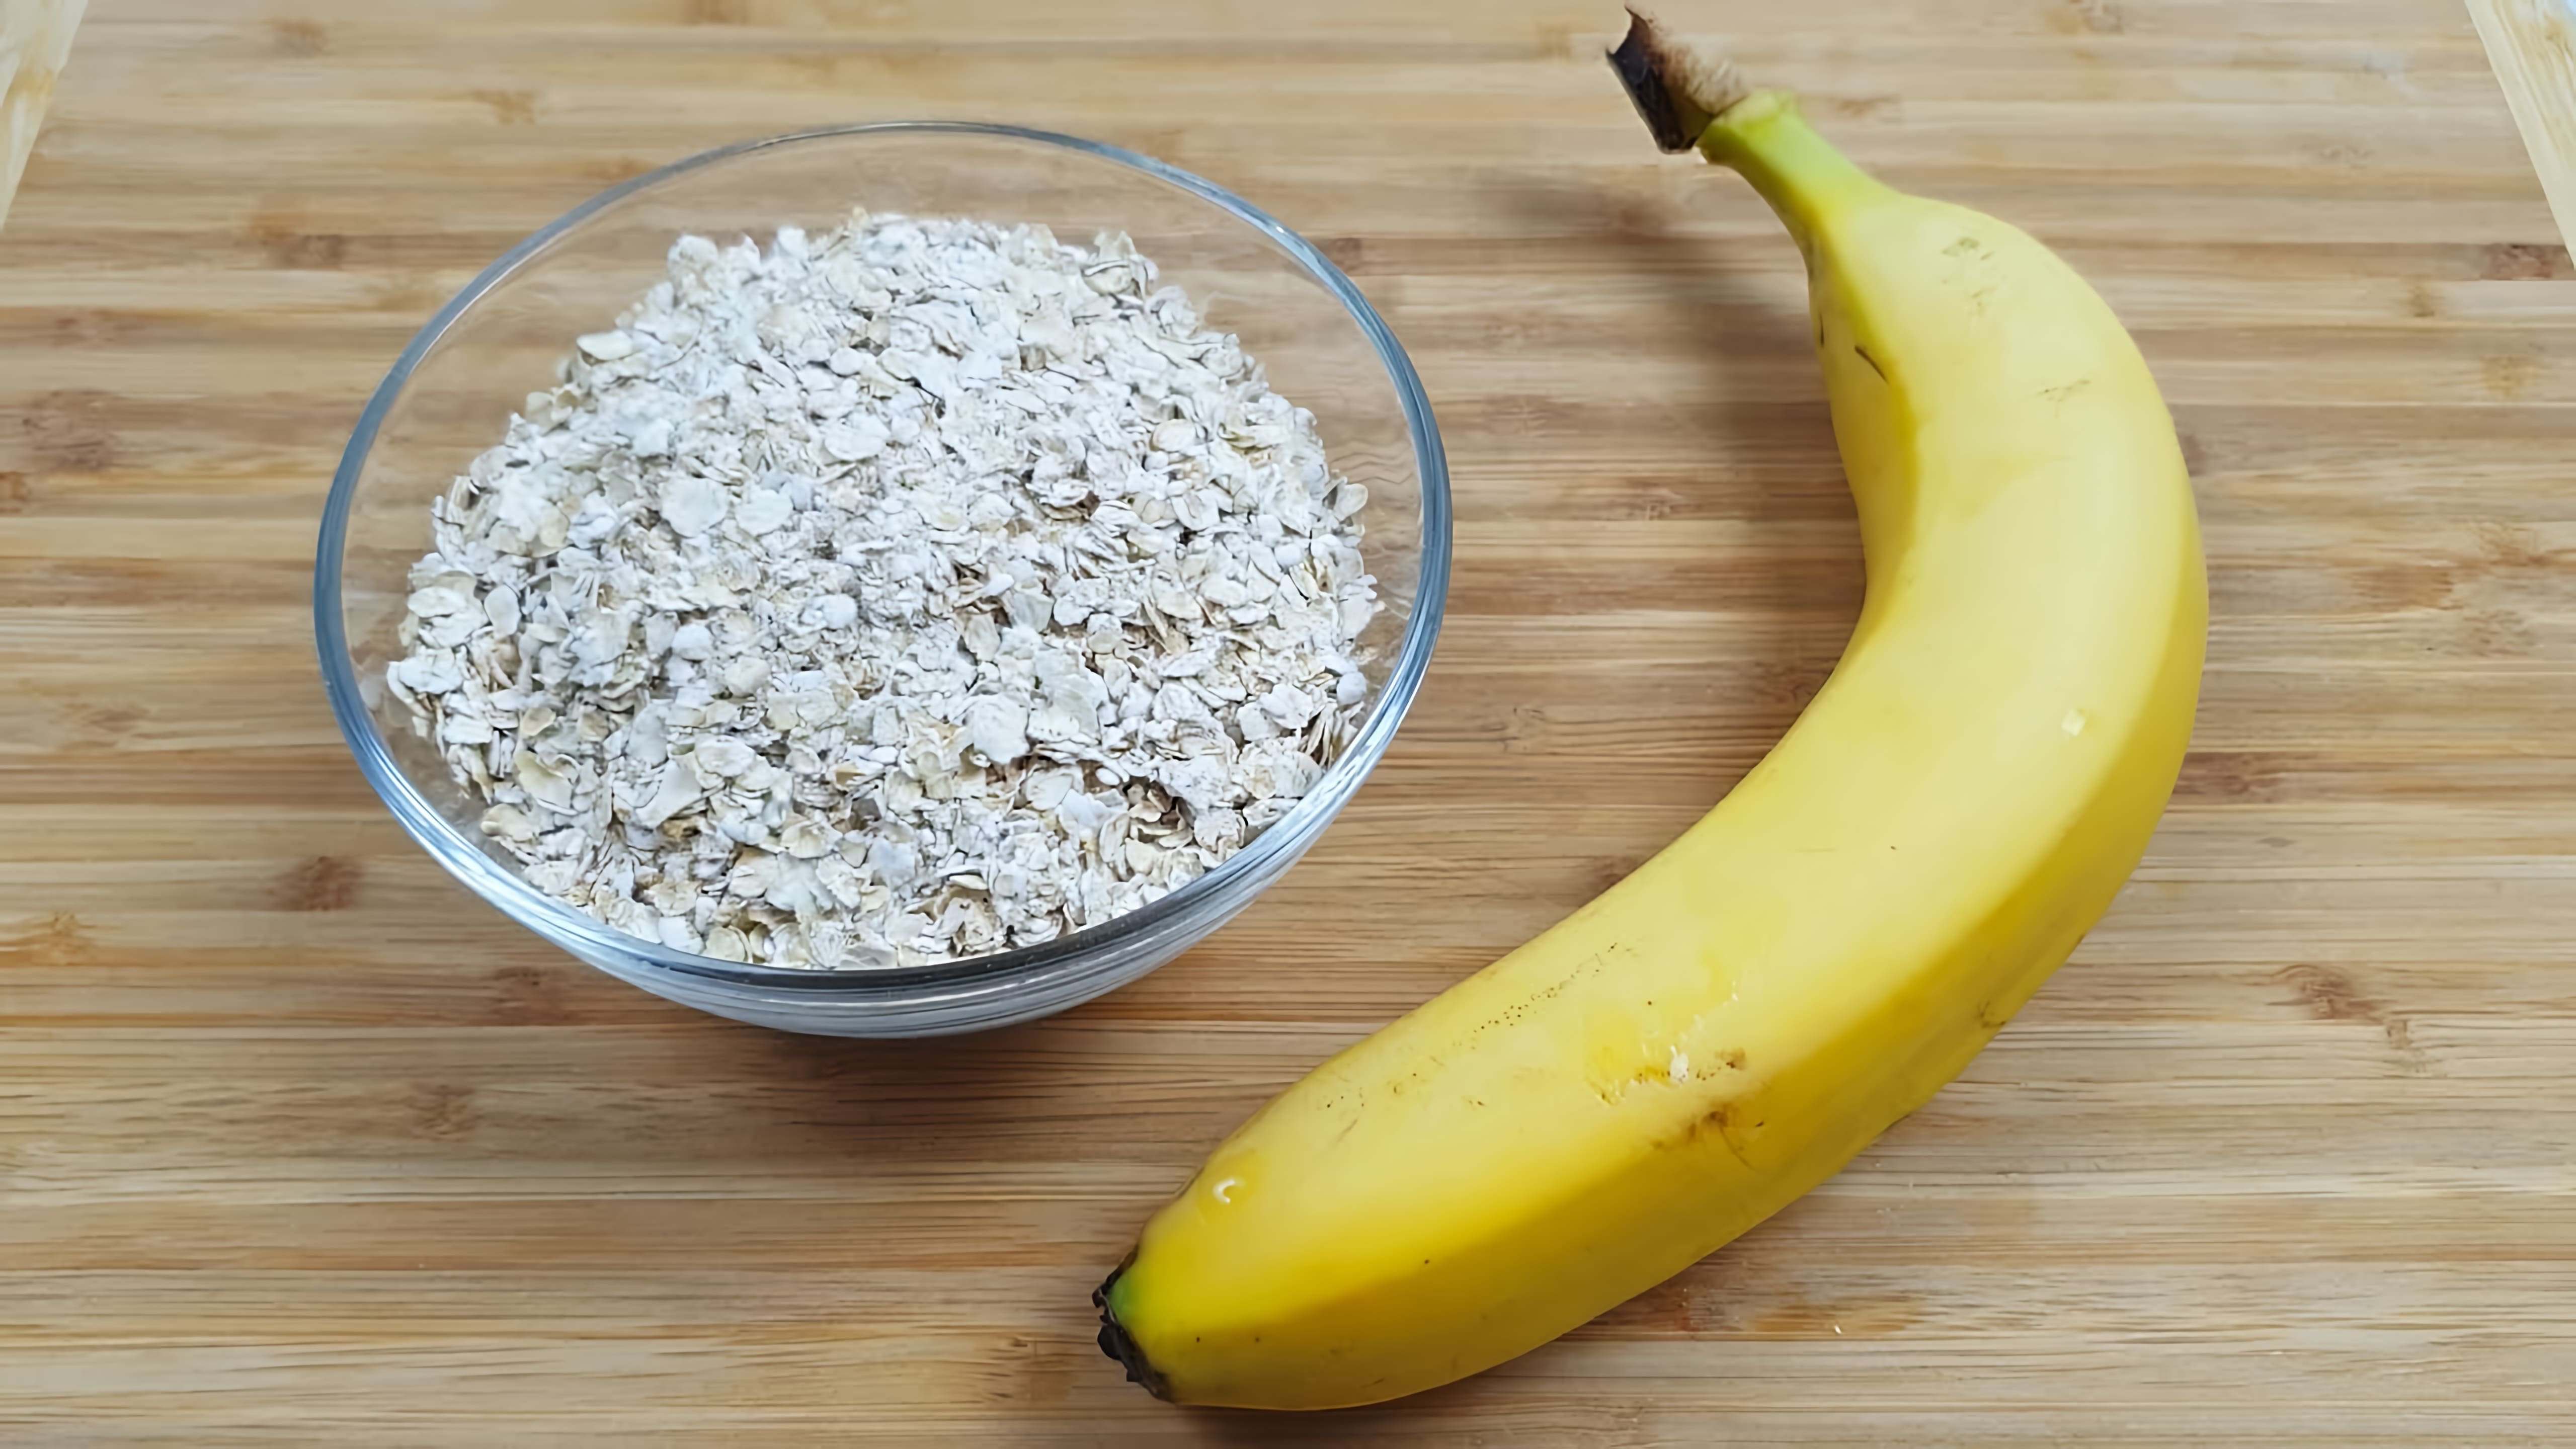 Овсянка и банан - это не только вкусный и полезный завтрак, но и отличный способ разнообразить свое меню